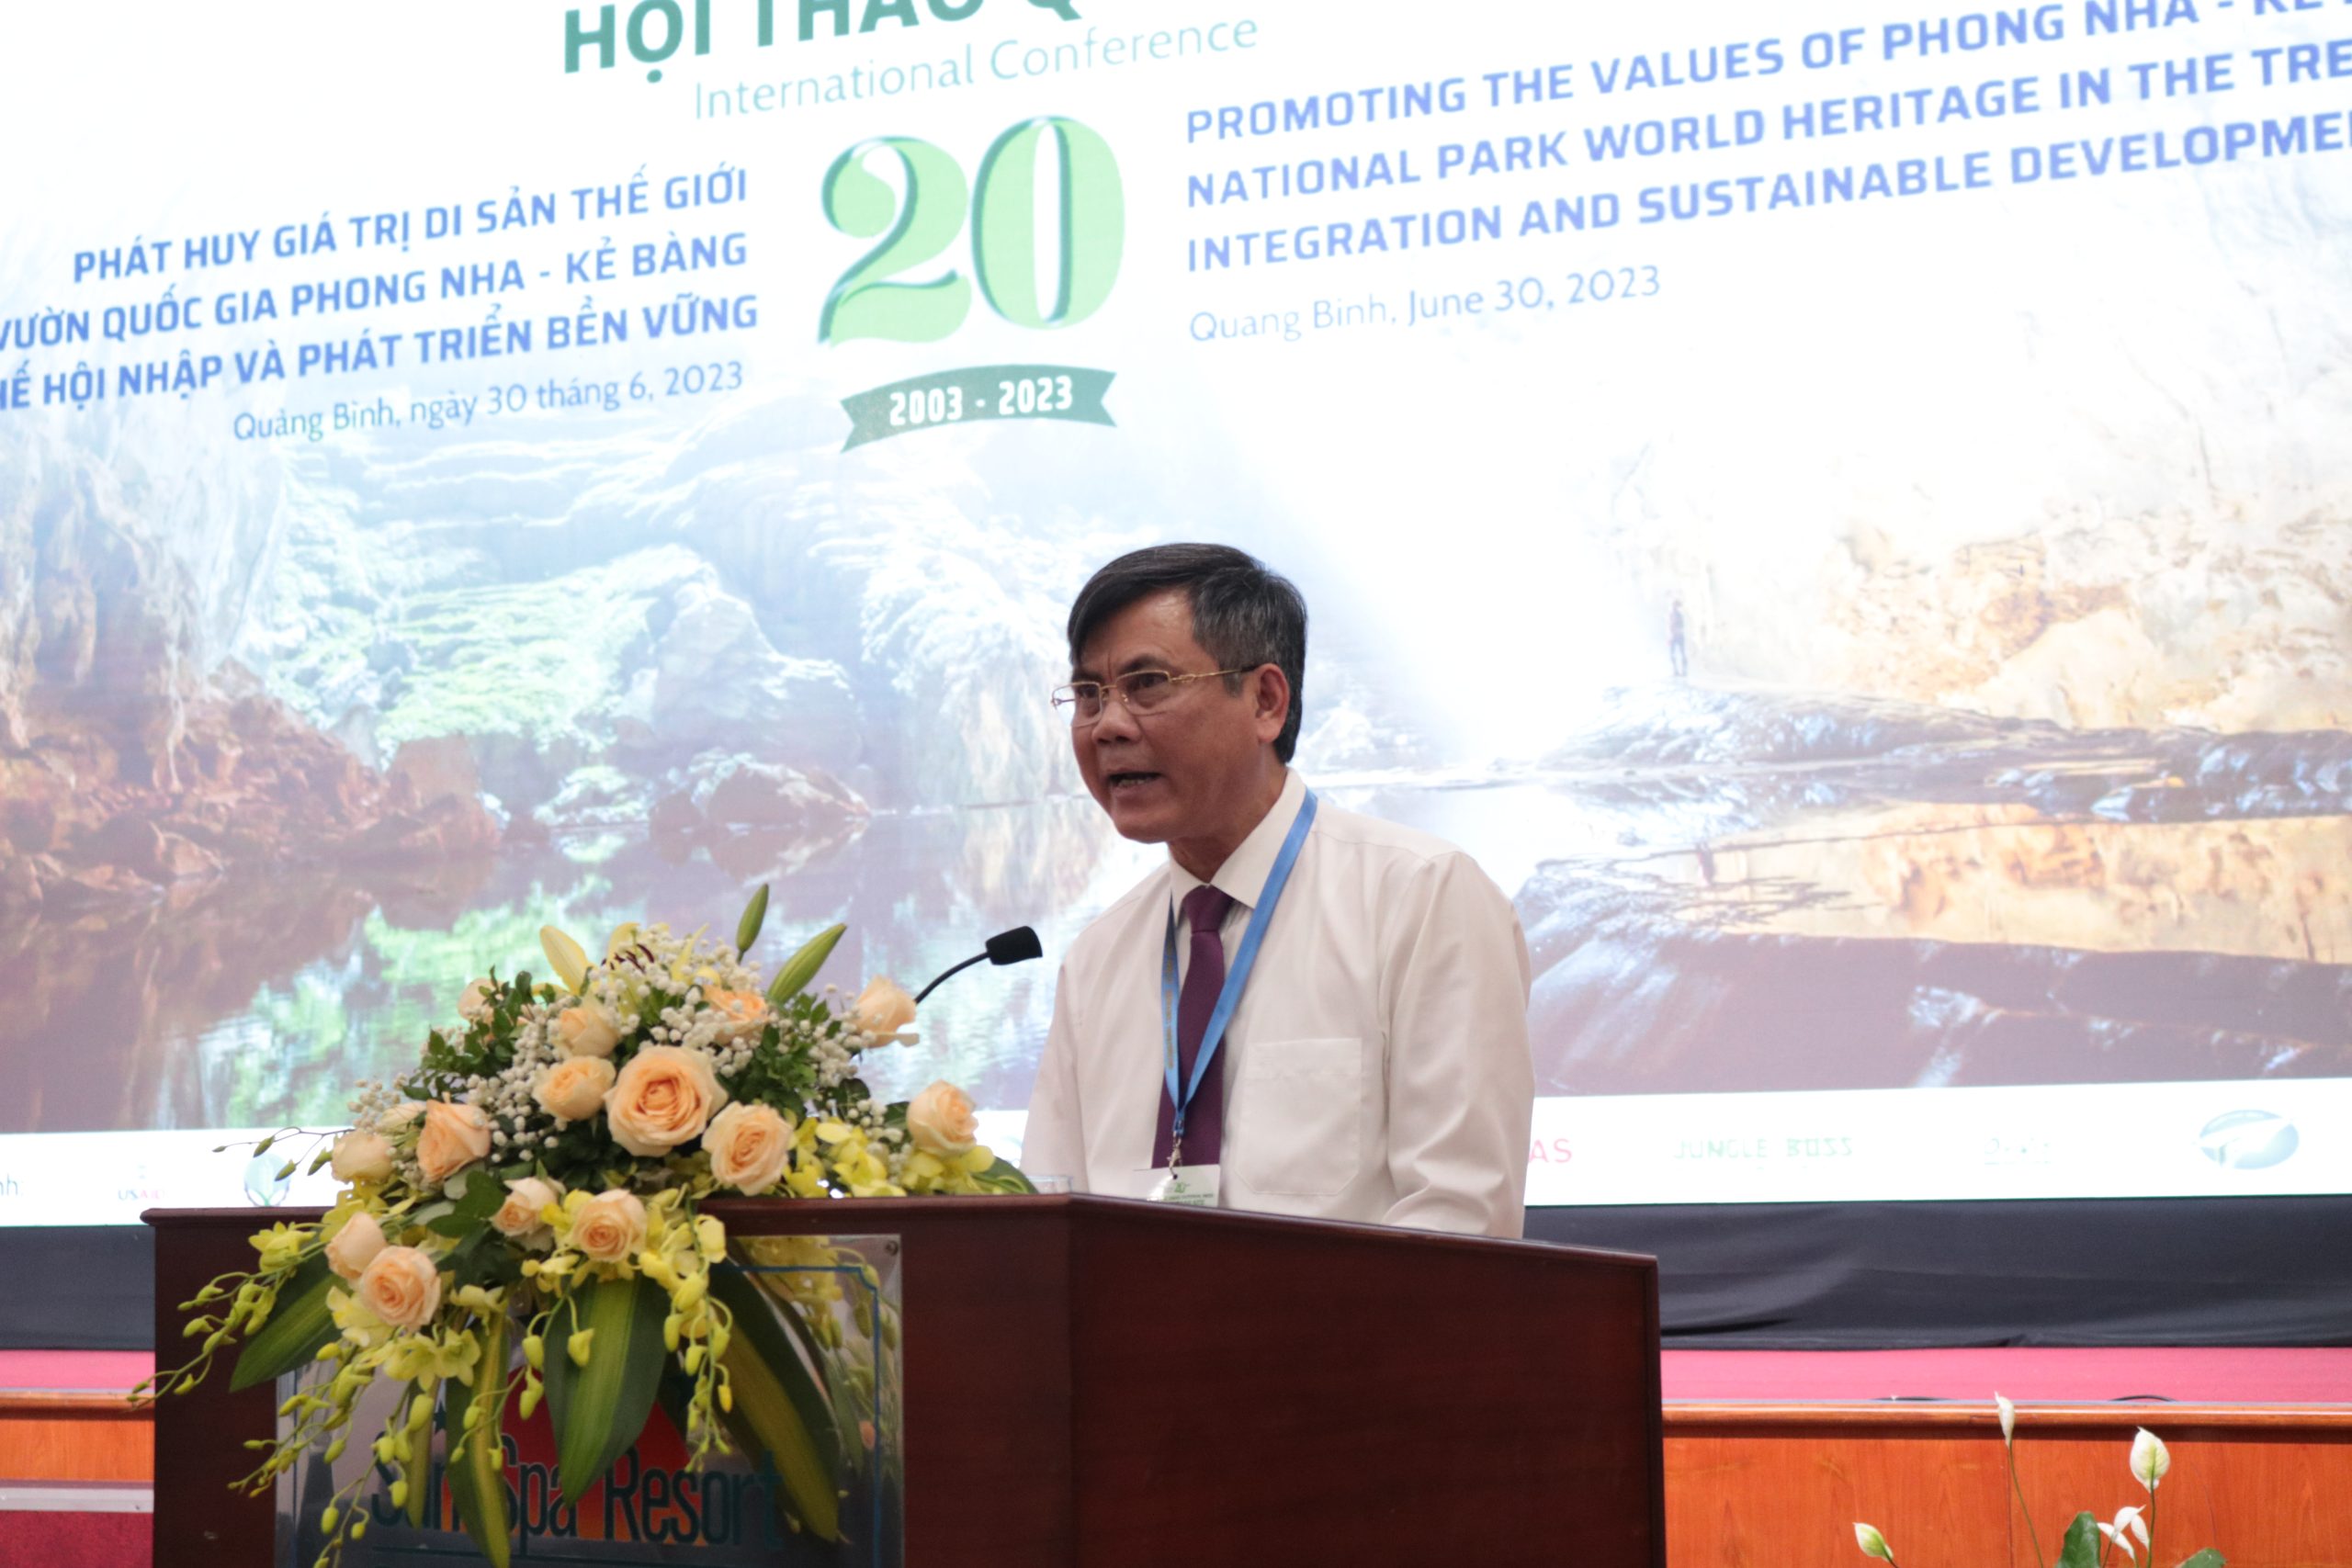 Chủ tịch UBND tỉnh Trần Thắng phát biểu chào mừng và khai mạc hội thảo.